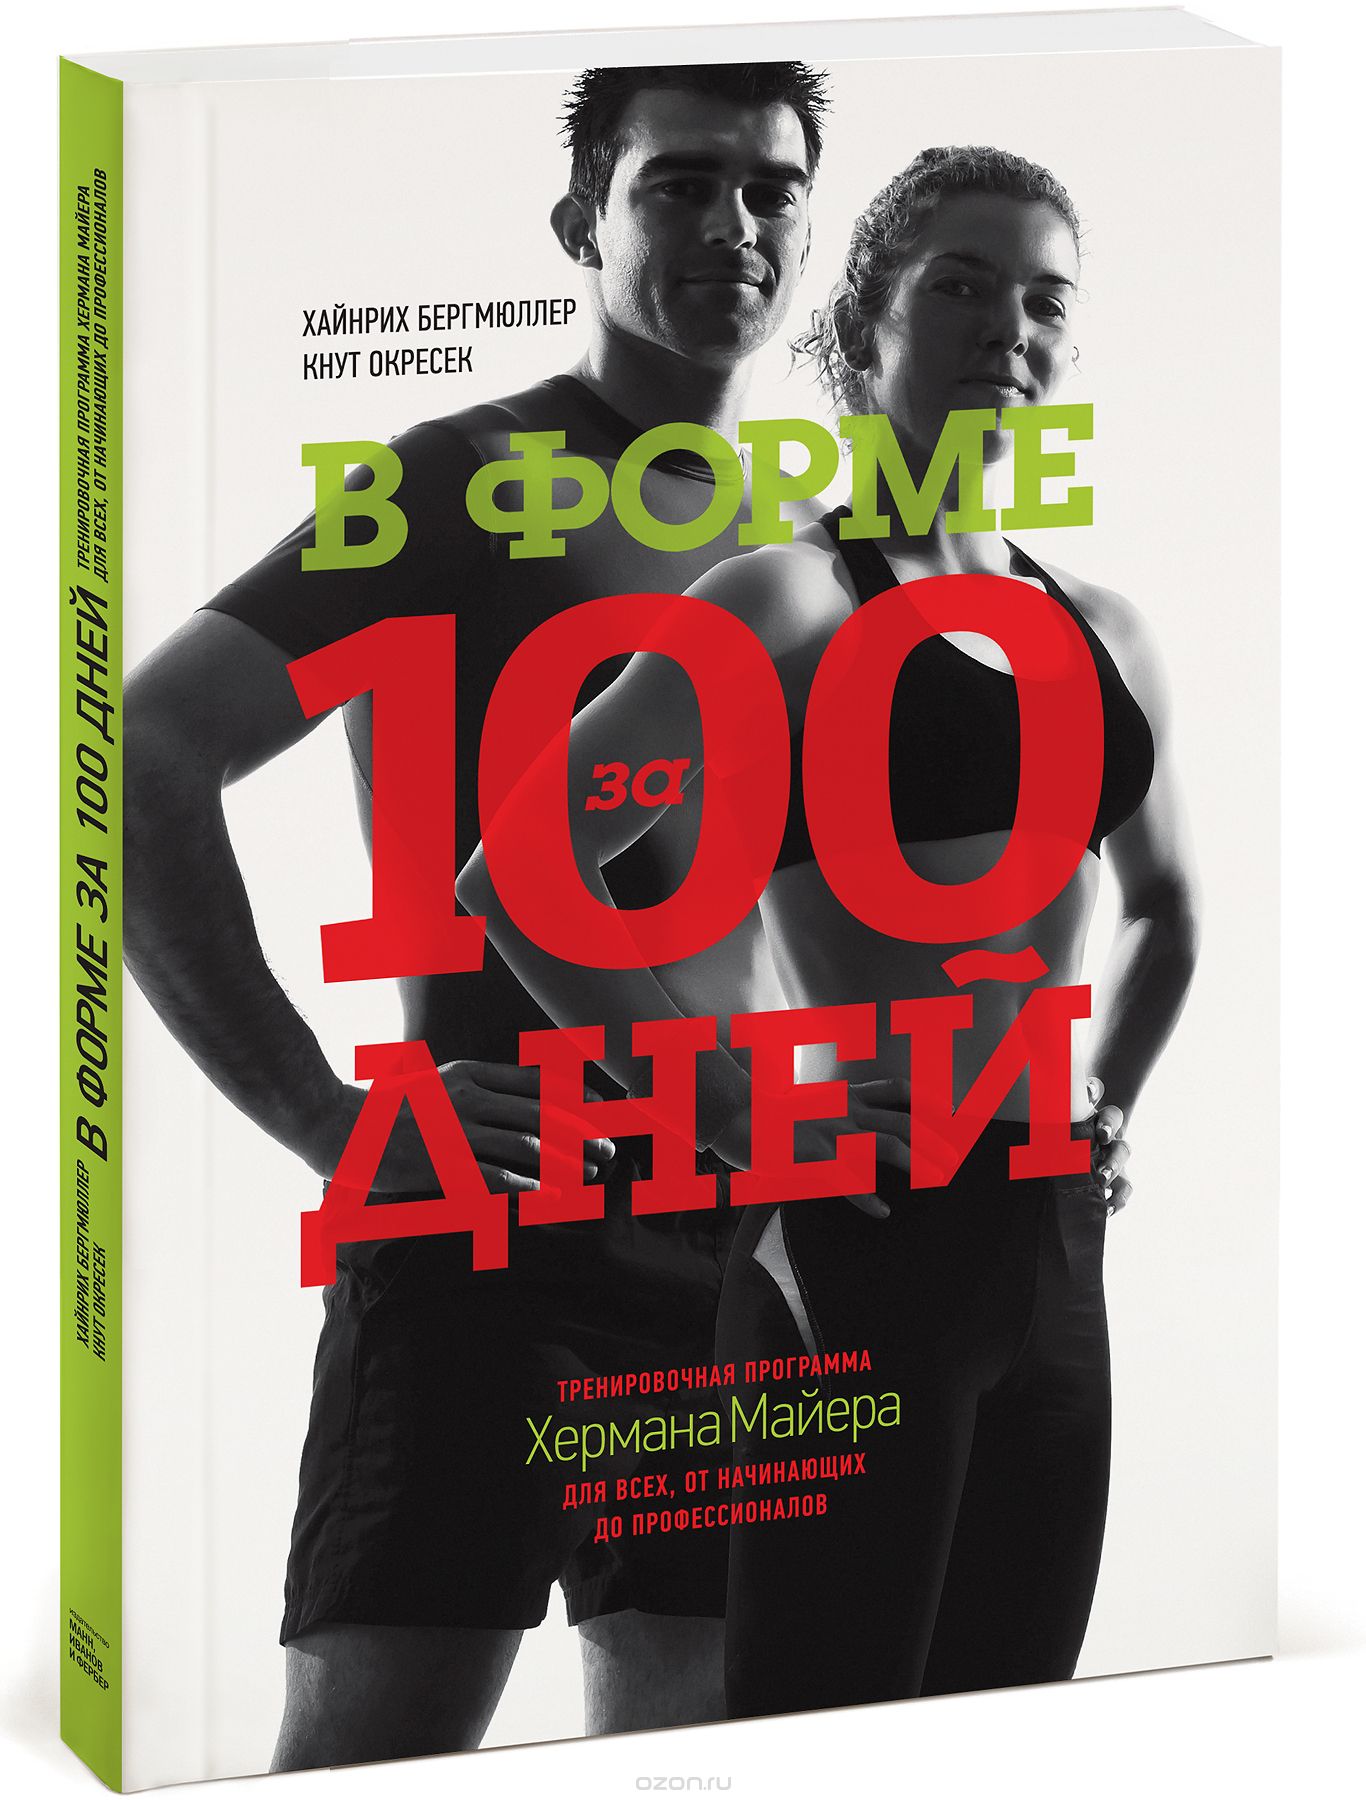 Скачать книгу "В форме за 100 дней. Тренировочная программа Хермана Майера для всех, от начинающих до профессионалов, Хайнрих Бергмюллер, Кнут Окресек"